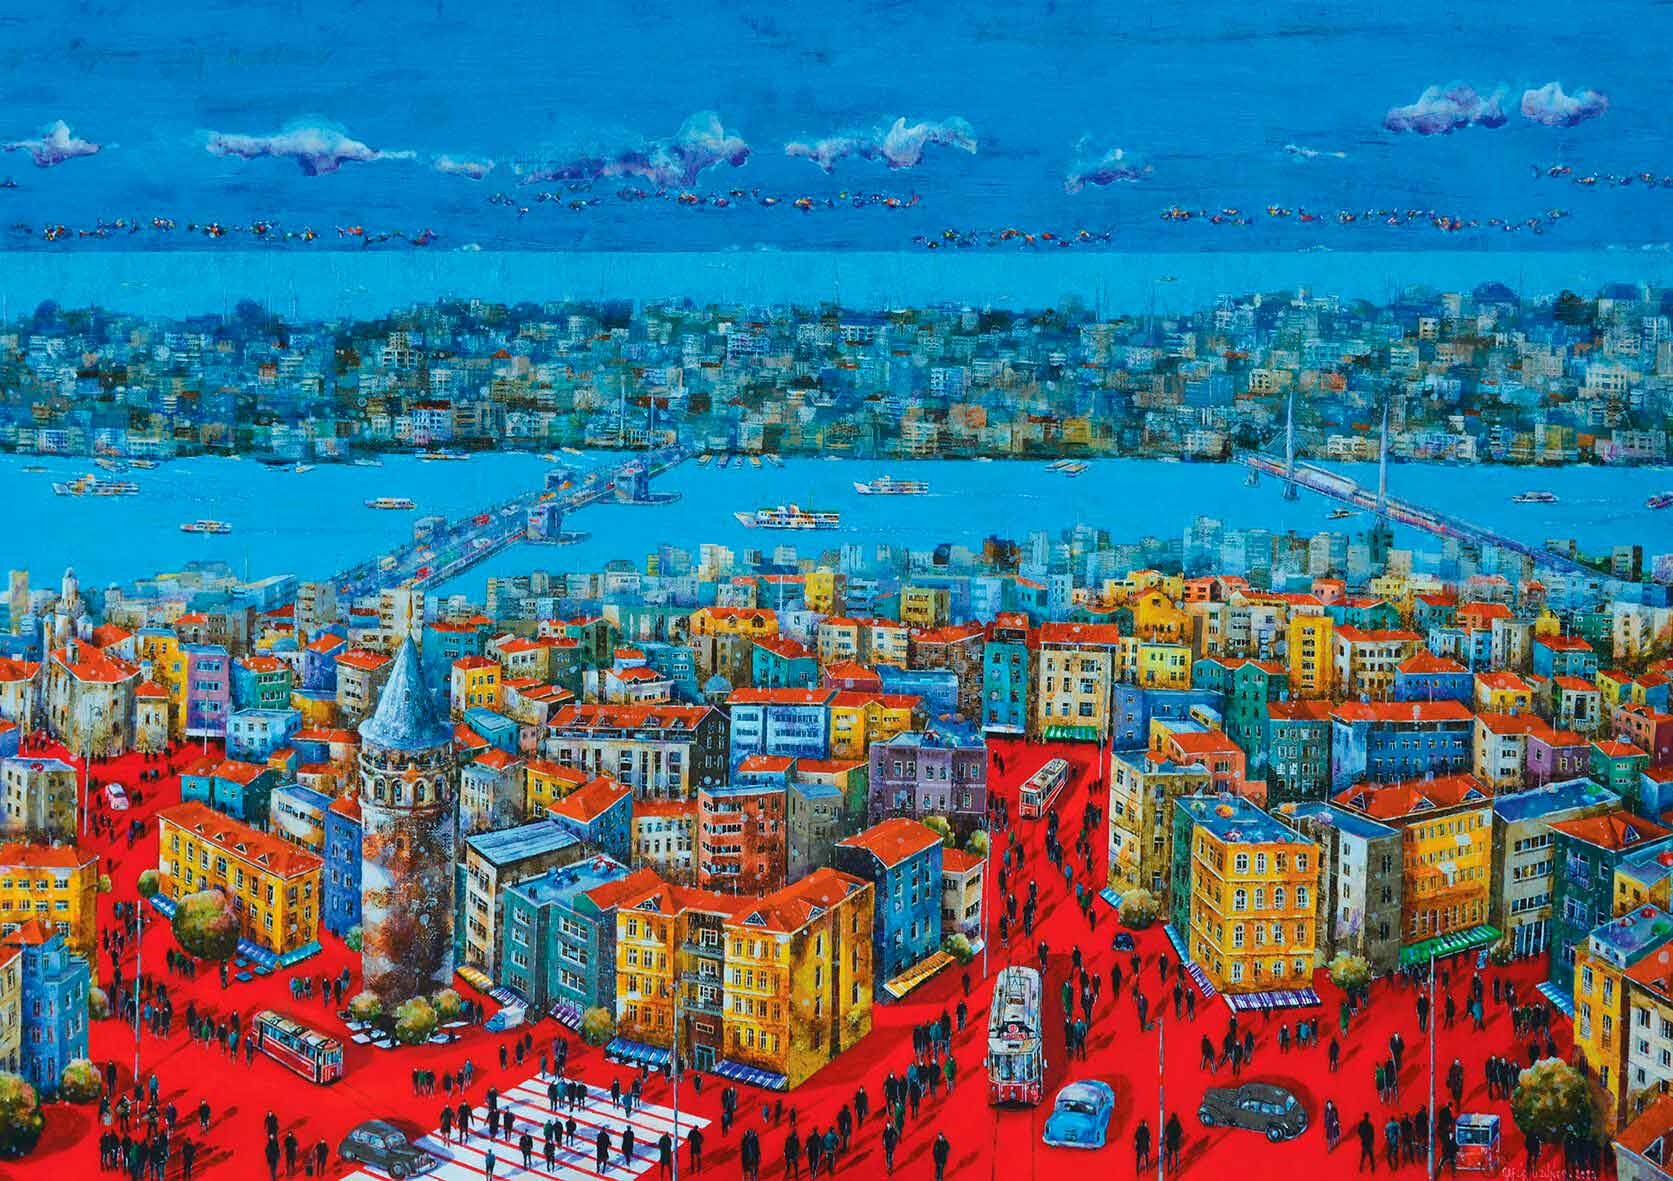 Puzzle Art Puzzle Conto de Fadas de Istambul de 1000 peças